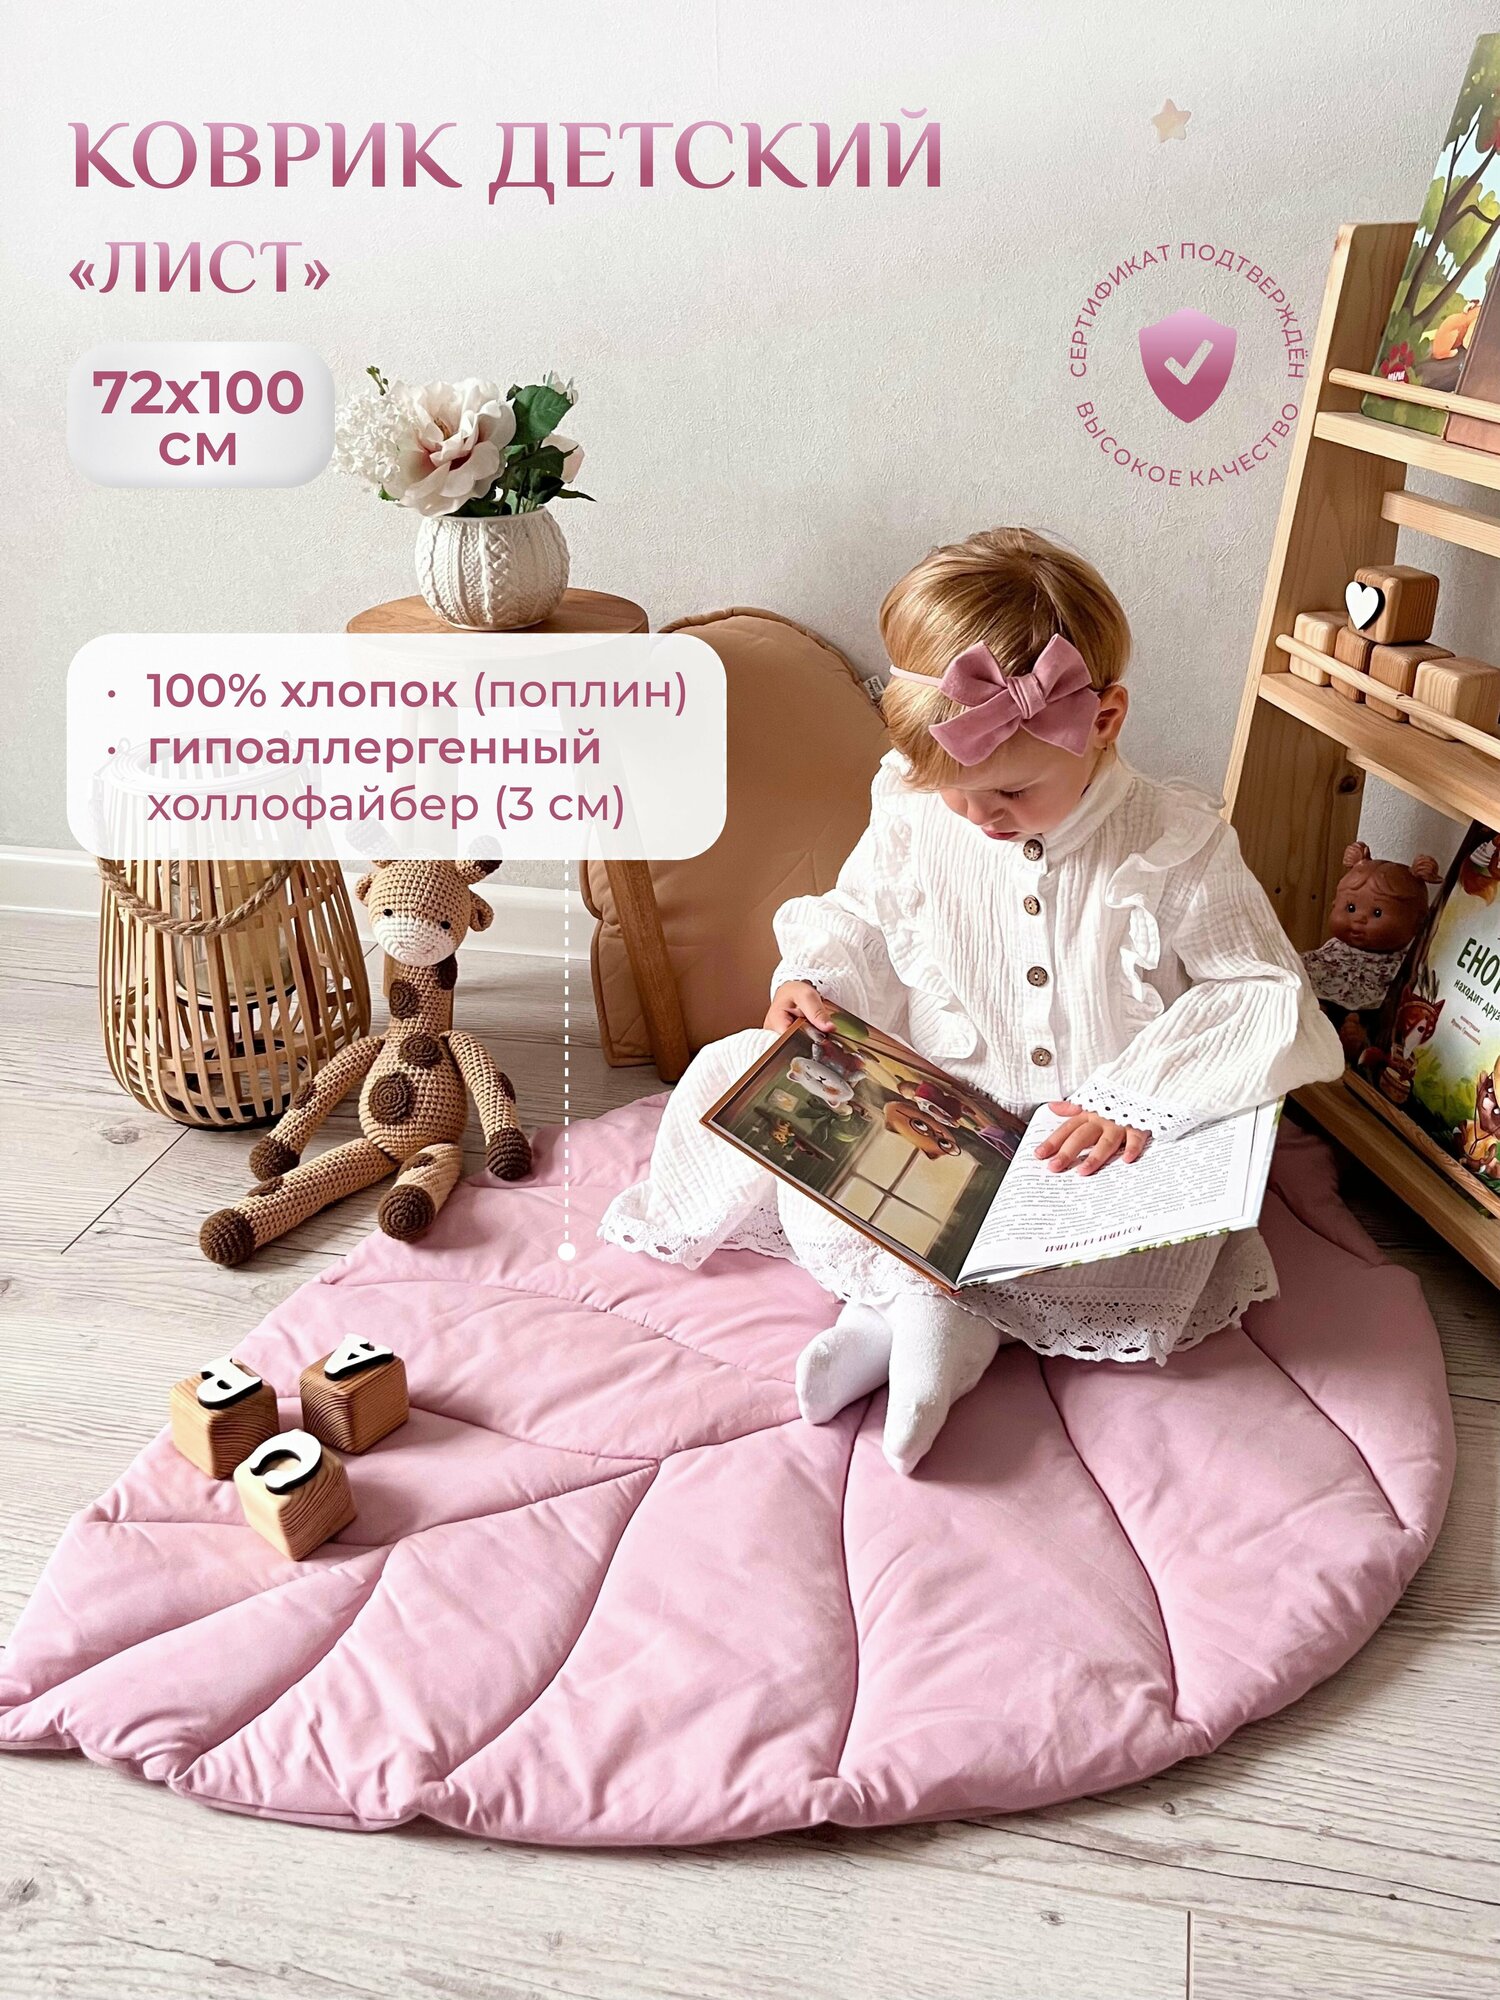 Коврик детский "Лист", Childrens-Textiles, 72*100 см, 100% хлопок, цвет: лилово-пудровый